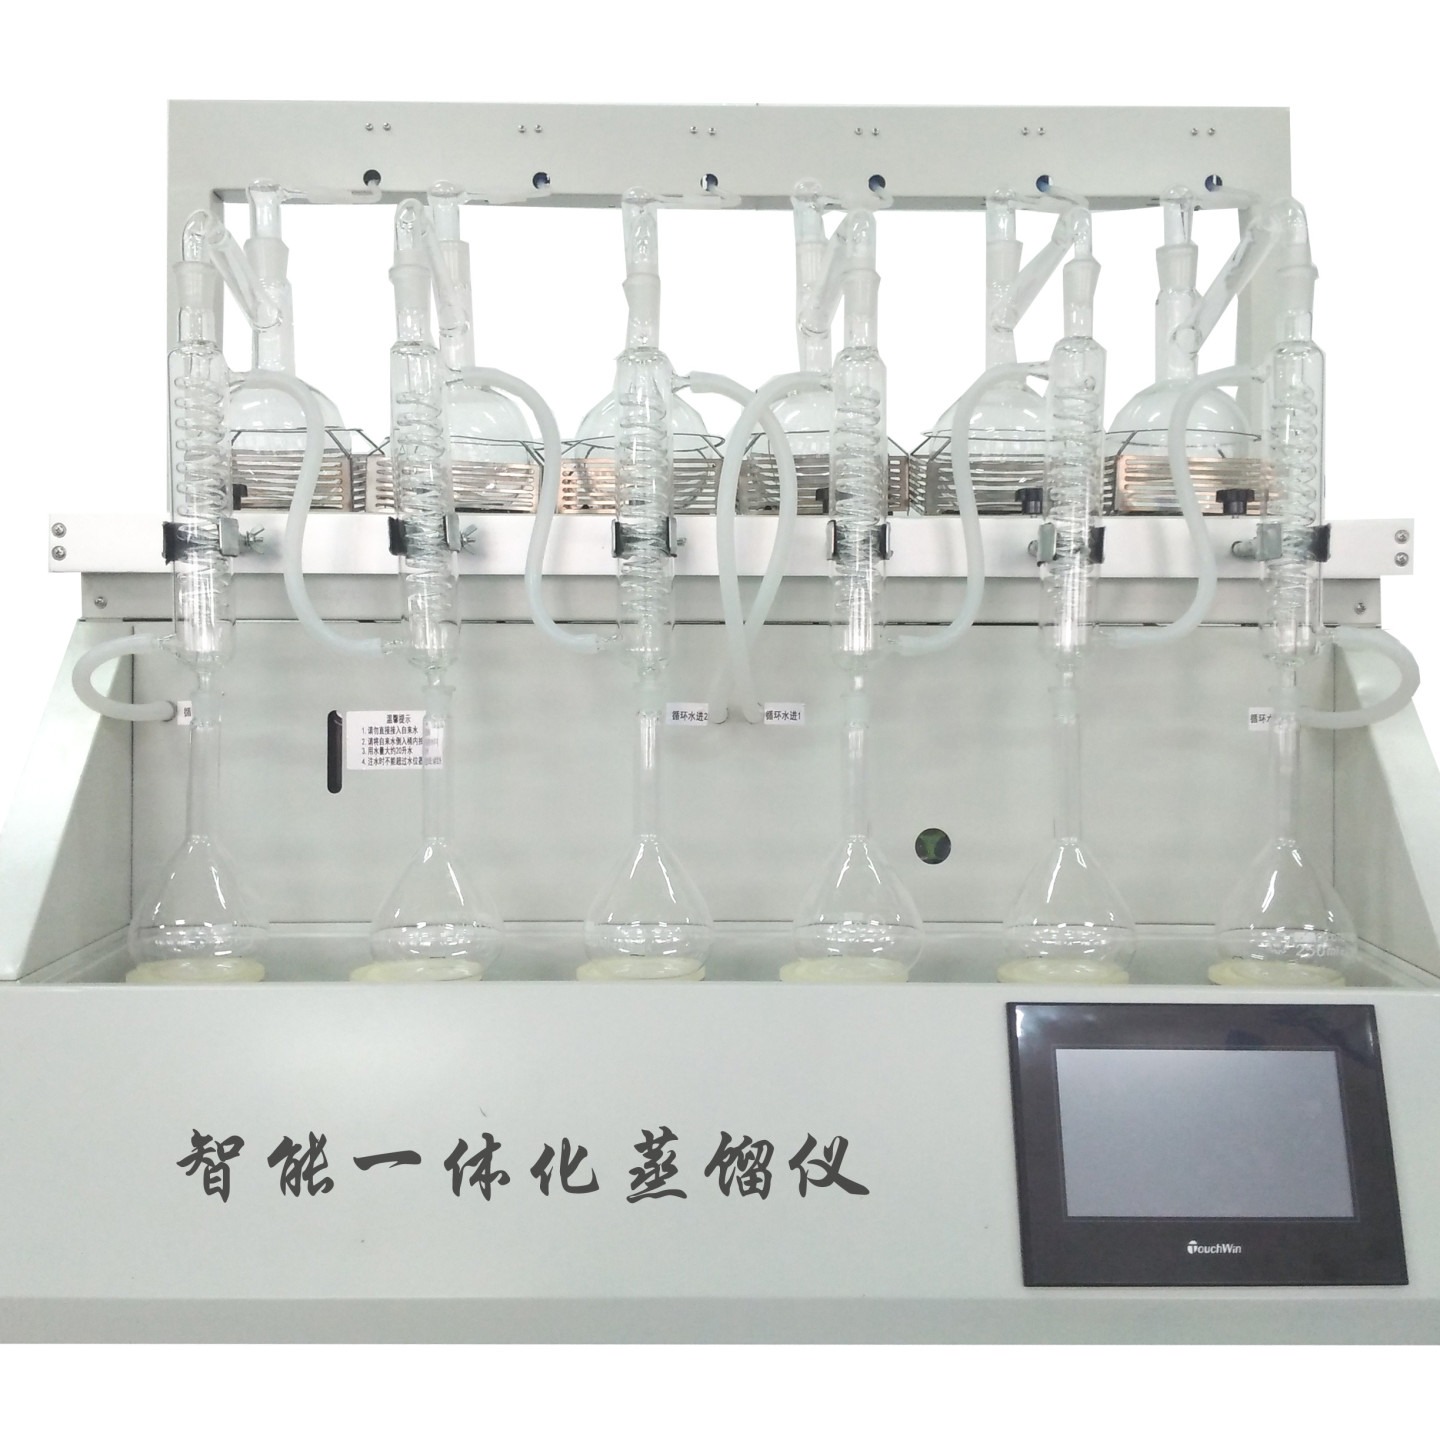 一体化万用蒸馏仪 CYZL-6 经济型蒸馏装置 智能一体化万用蒸馏仪图片